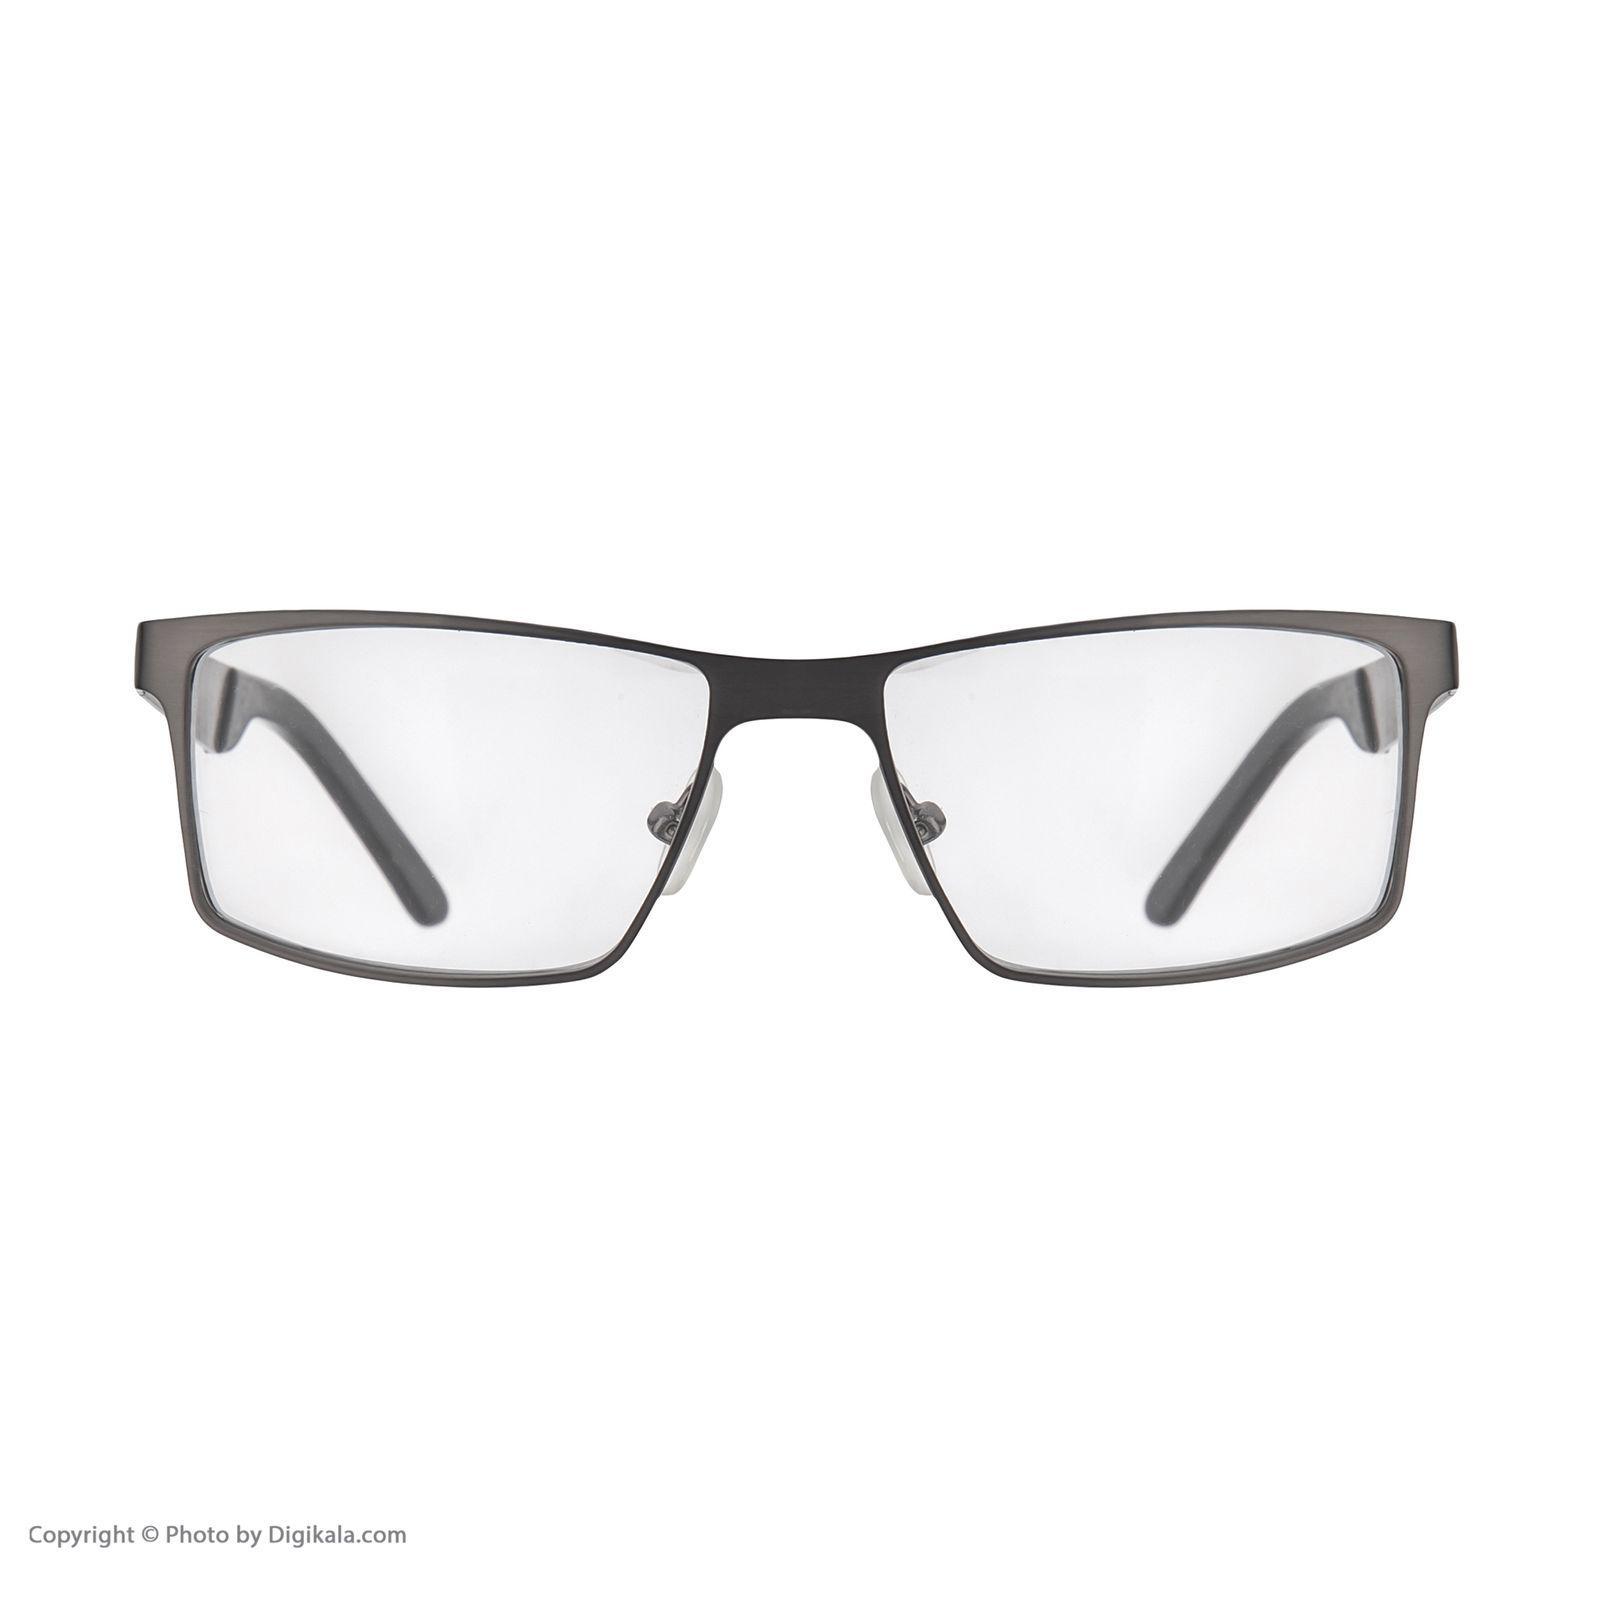 فریم عینک طبی هوگو باس مدل 82008 -  - 6